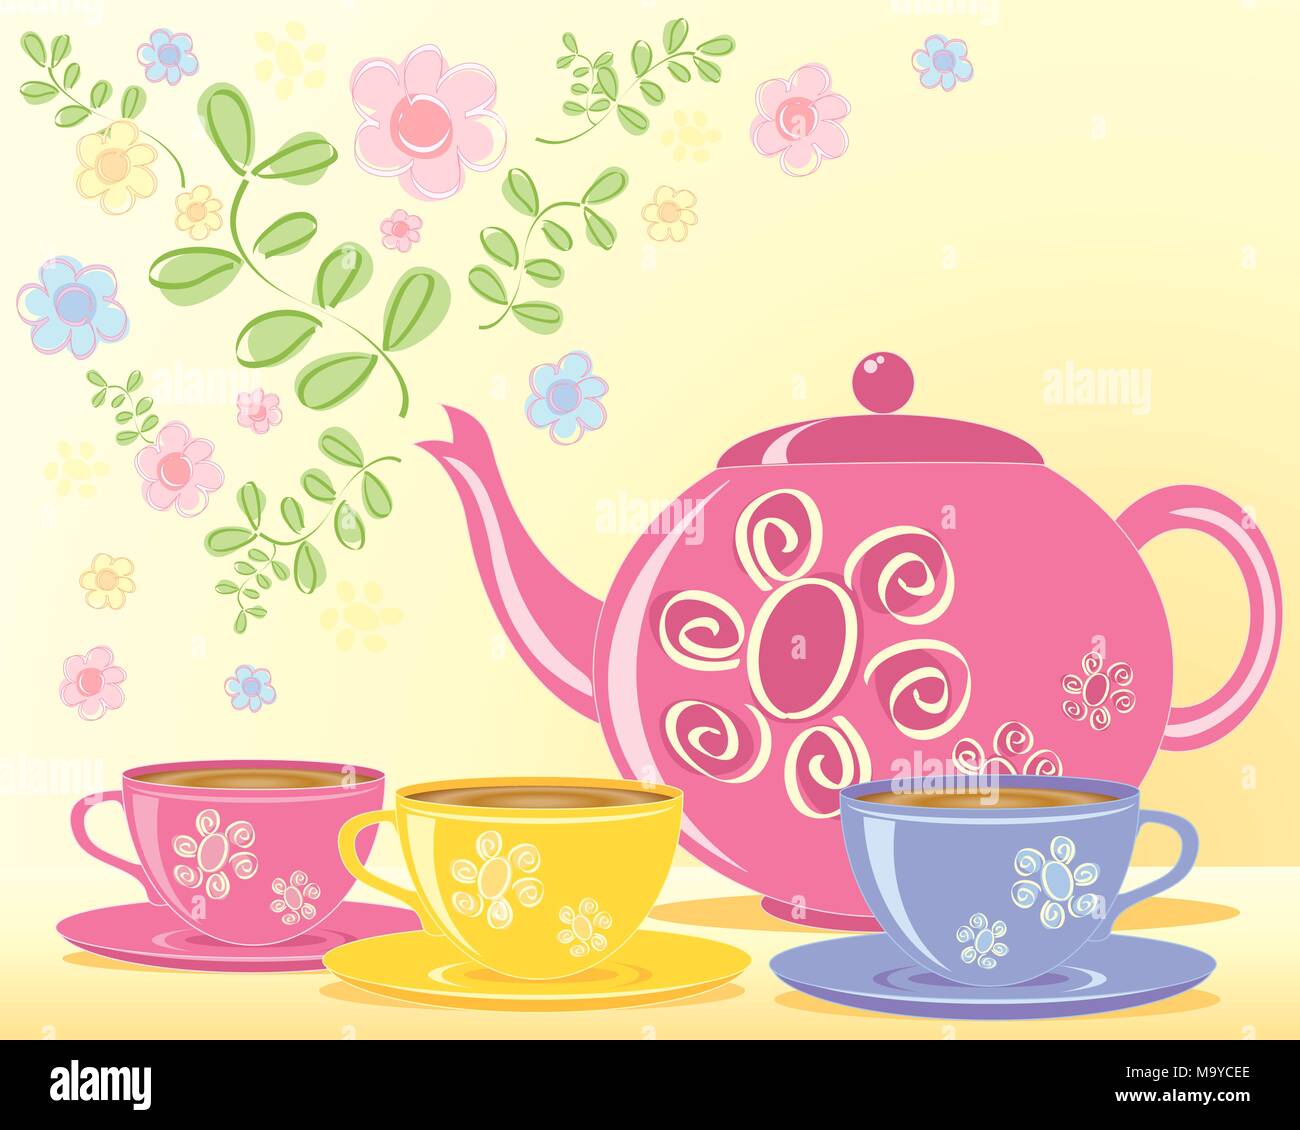 Une illustration d'une théière décorée rose tasses et soucoupes et d'appariement avec une feuille verte et fleur Illustration de Vecteur